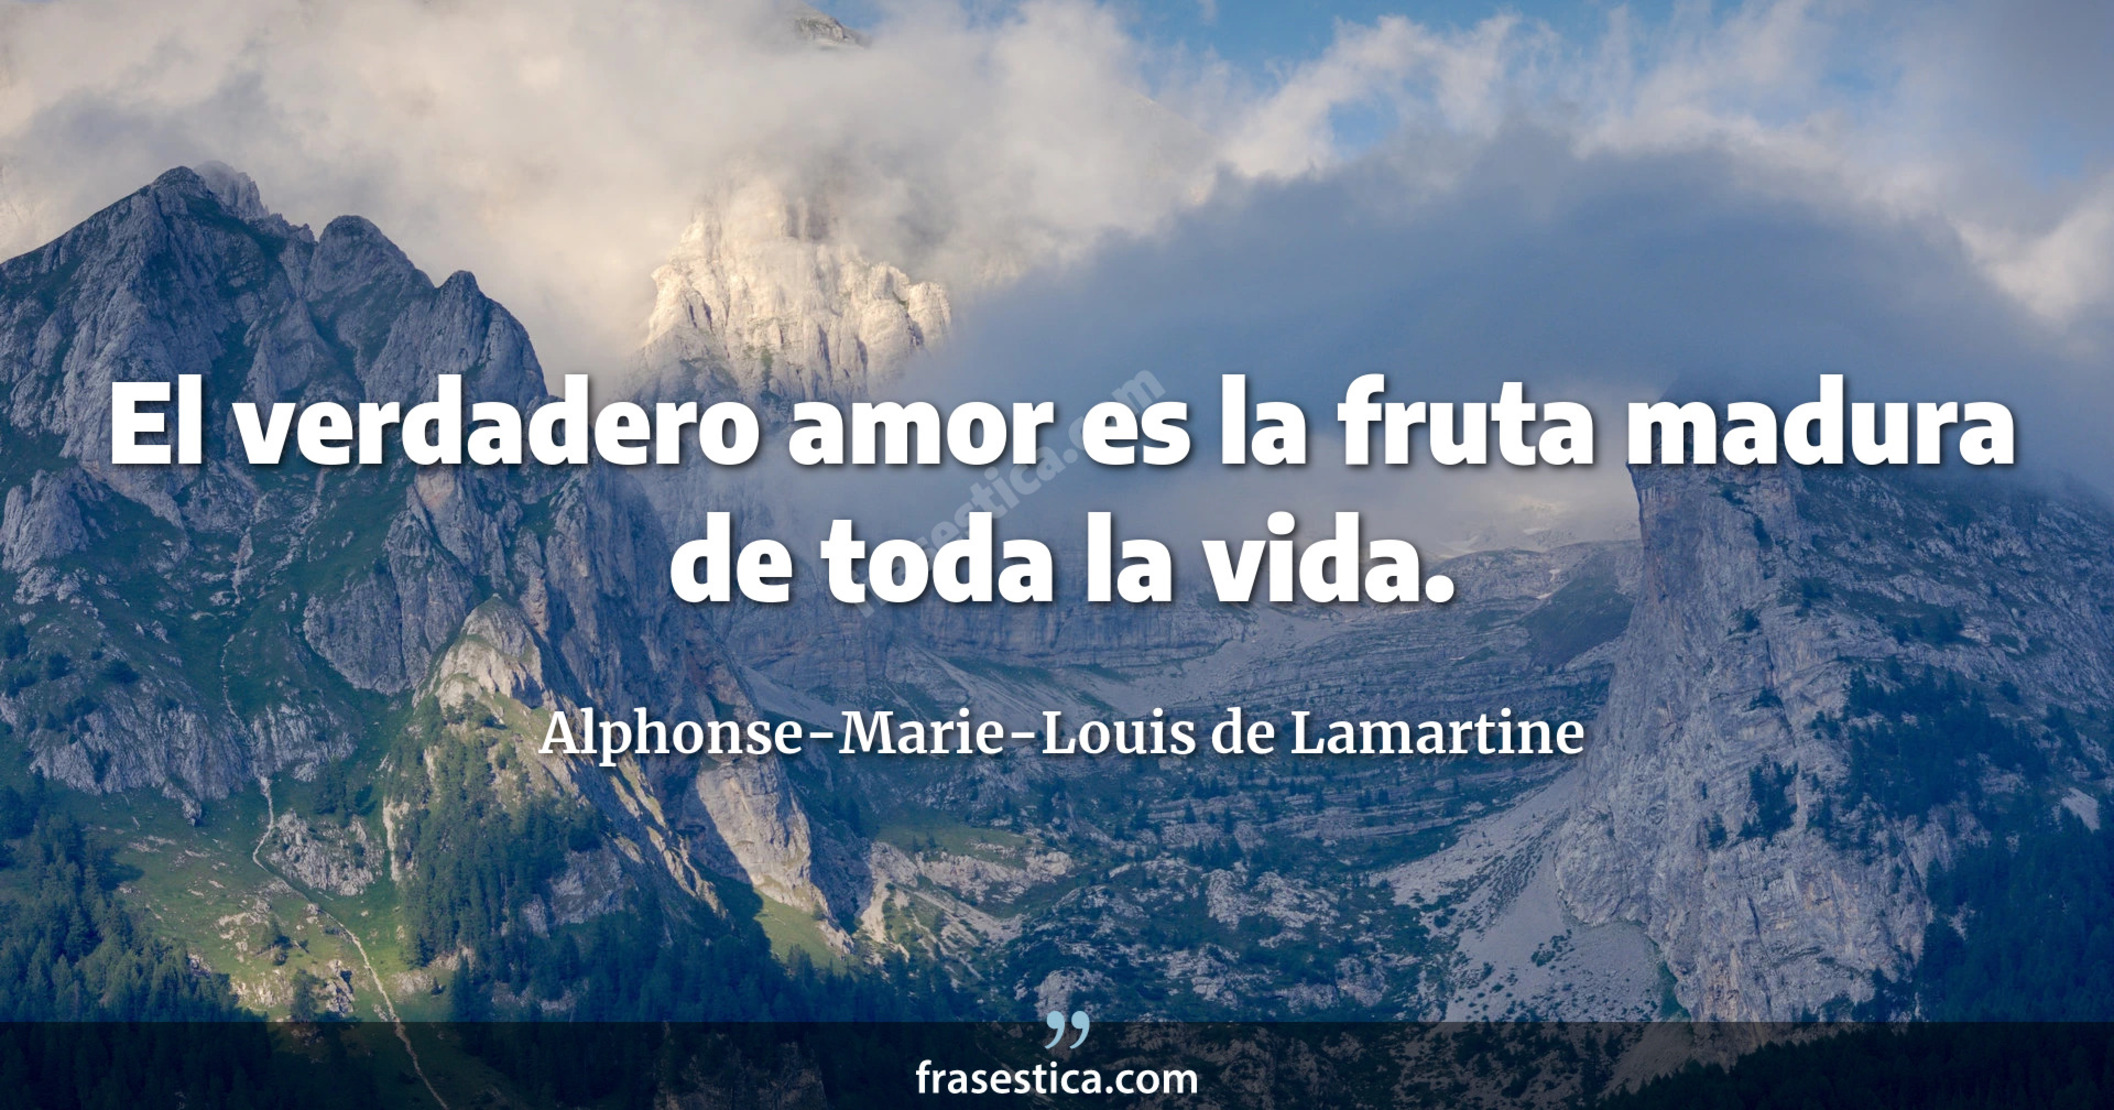 El verdadero amor es la fruta madura de toda la vida. - Alphonse-Marie-Louis de Lamartine